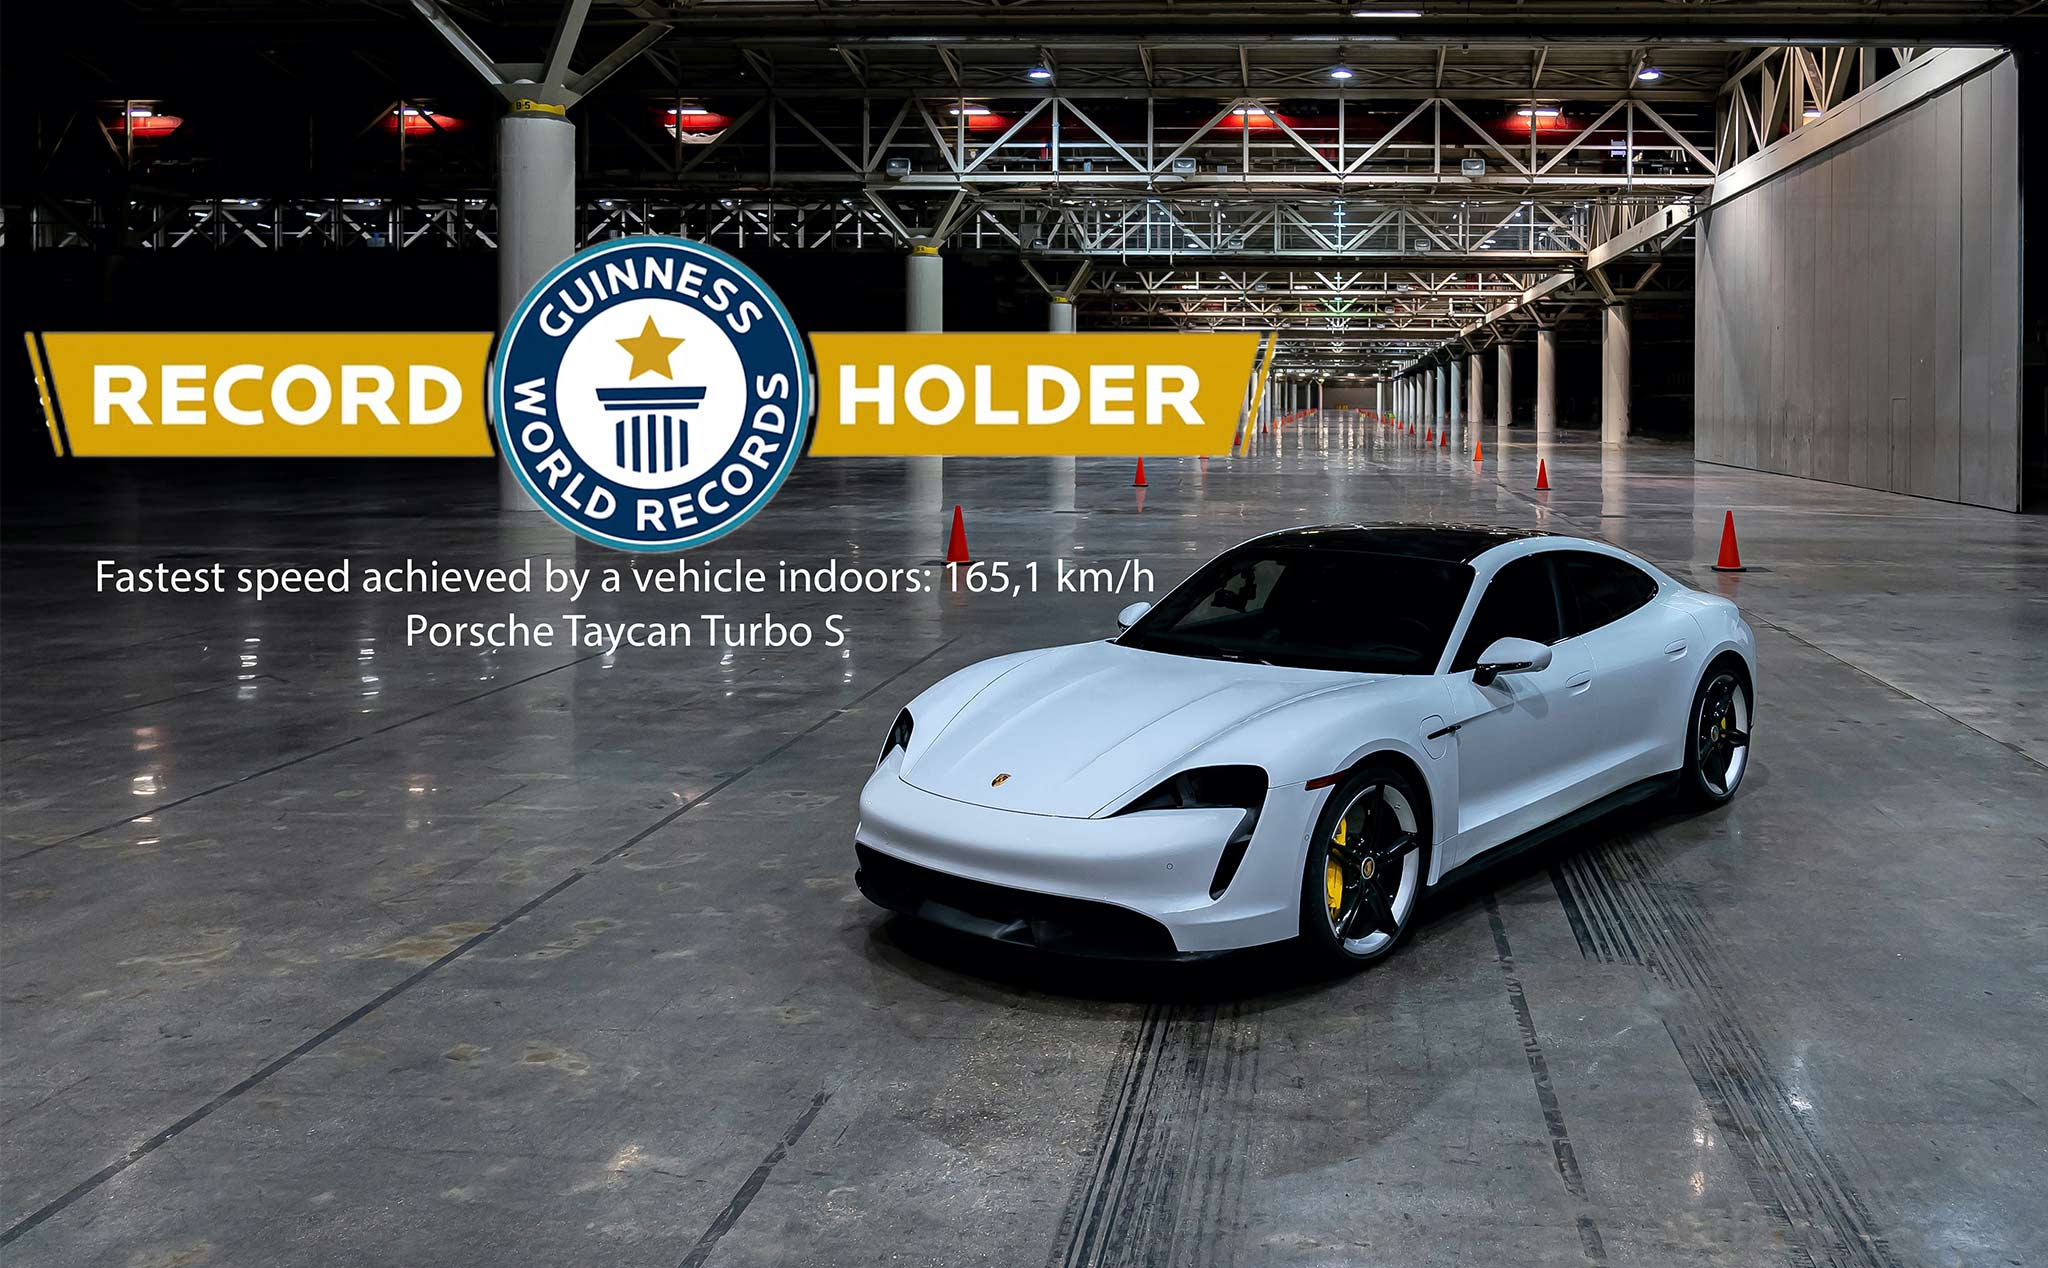 Porsche Taycan nhận kỷ lục Guinness thế giới về xe có tốc độ nhanh nhất trong nhà kín